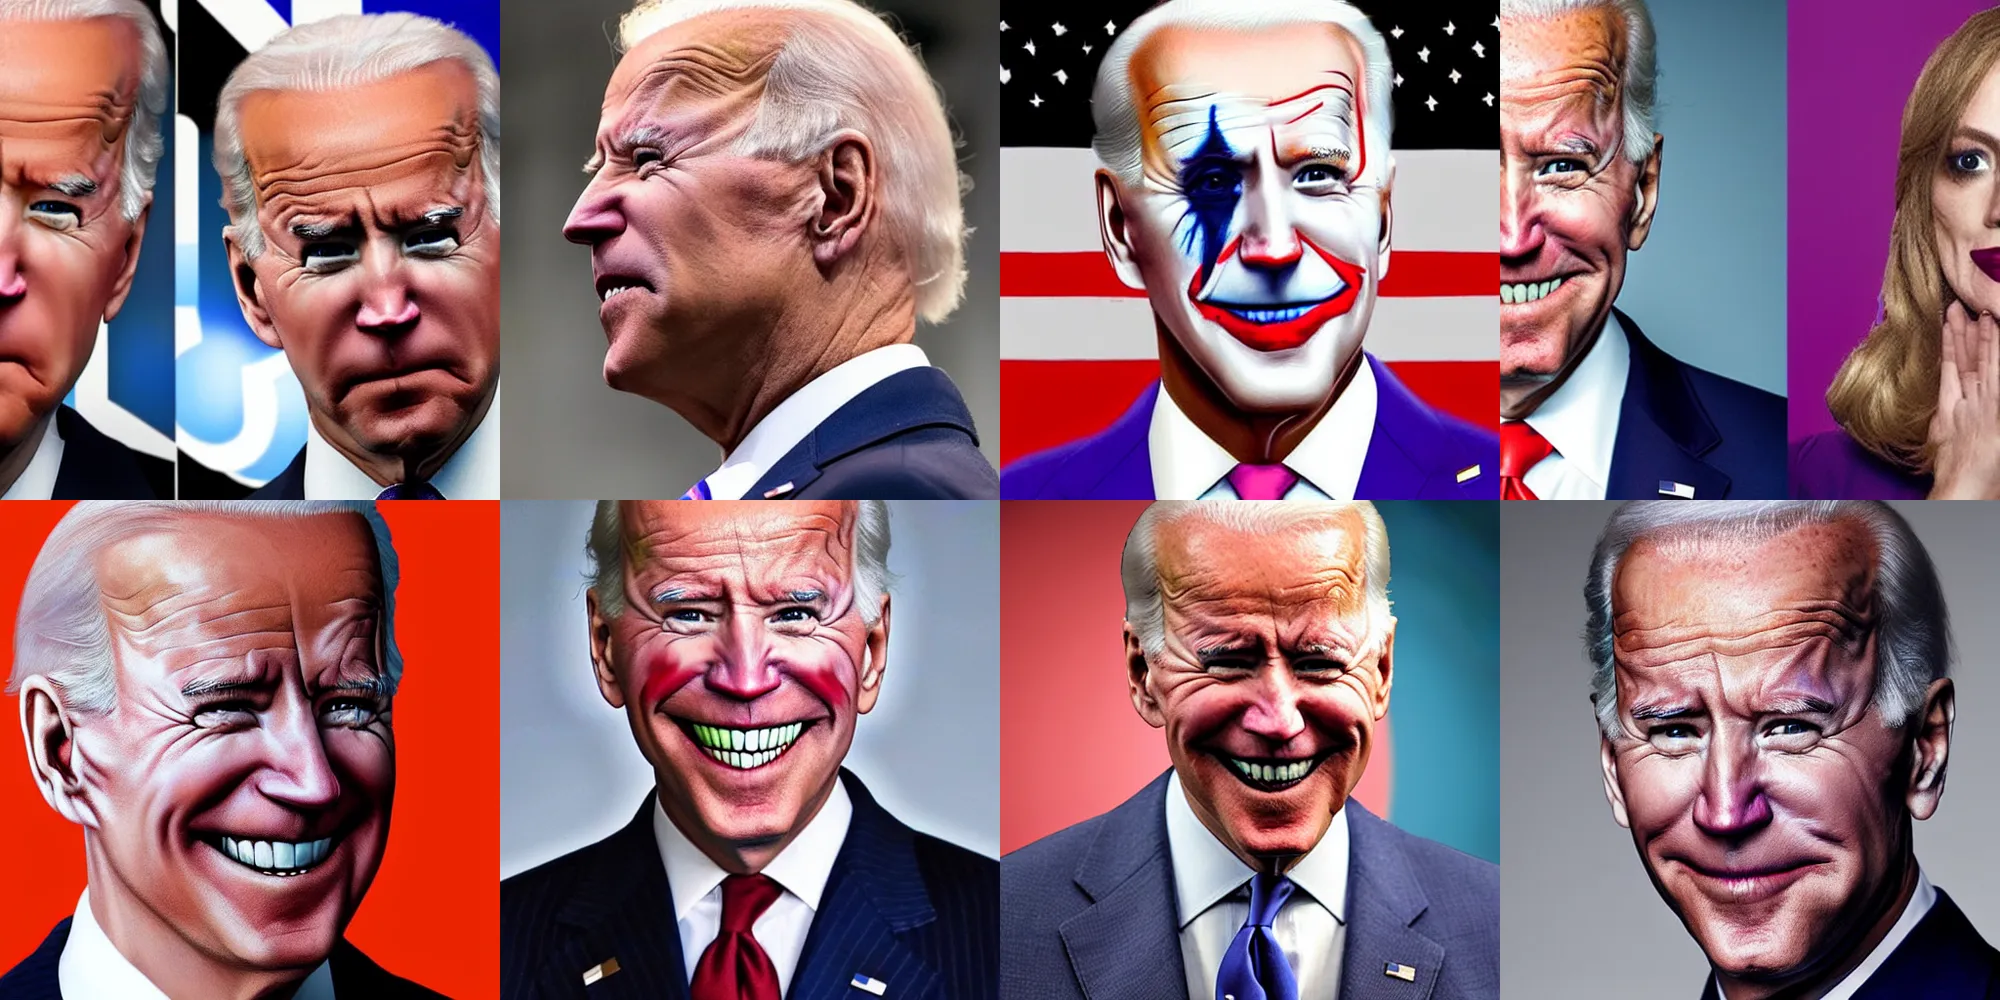 Prompt: Joe Biden in Joker makeup